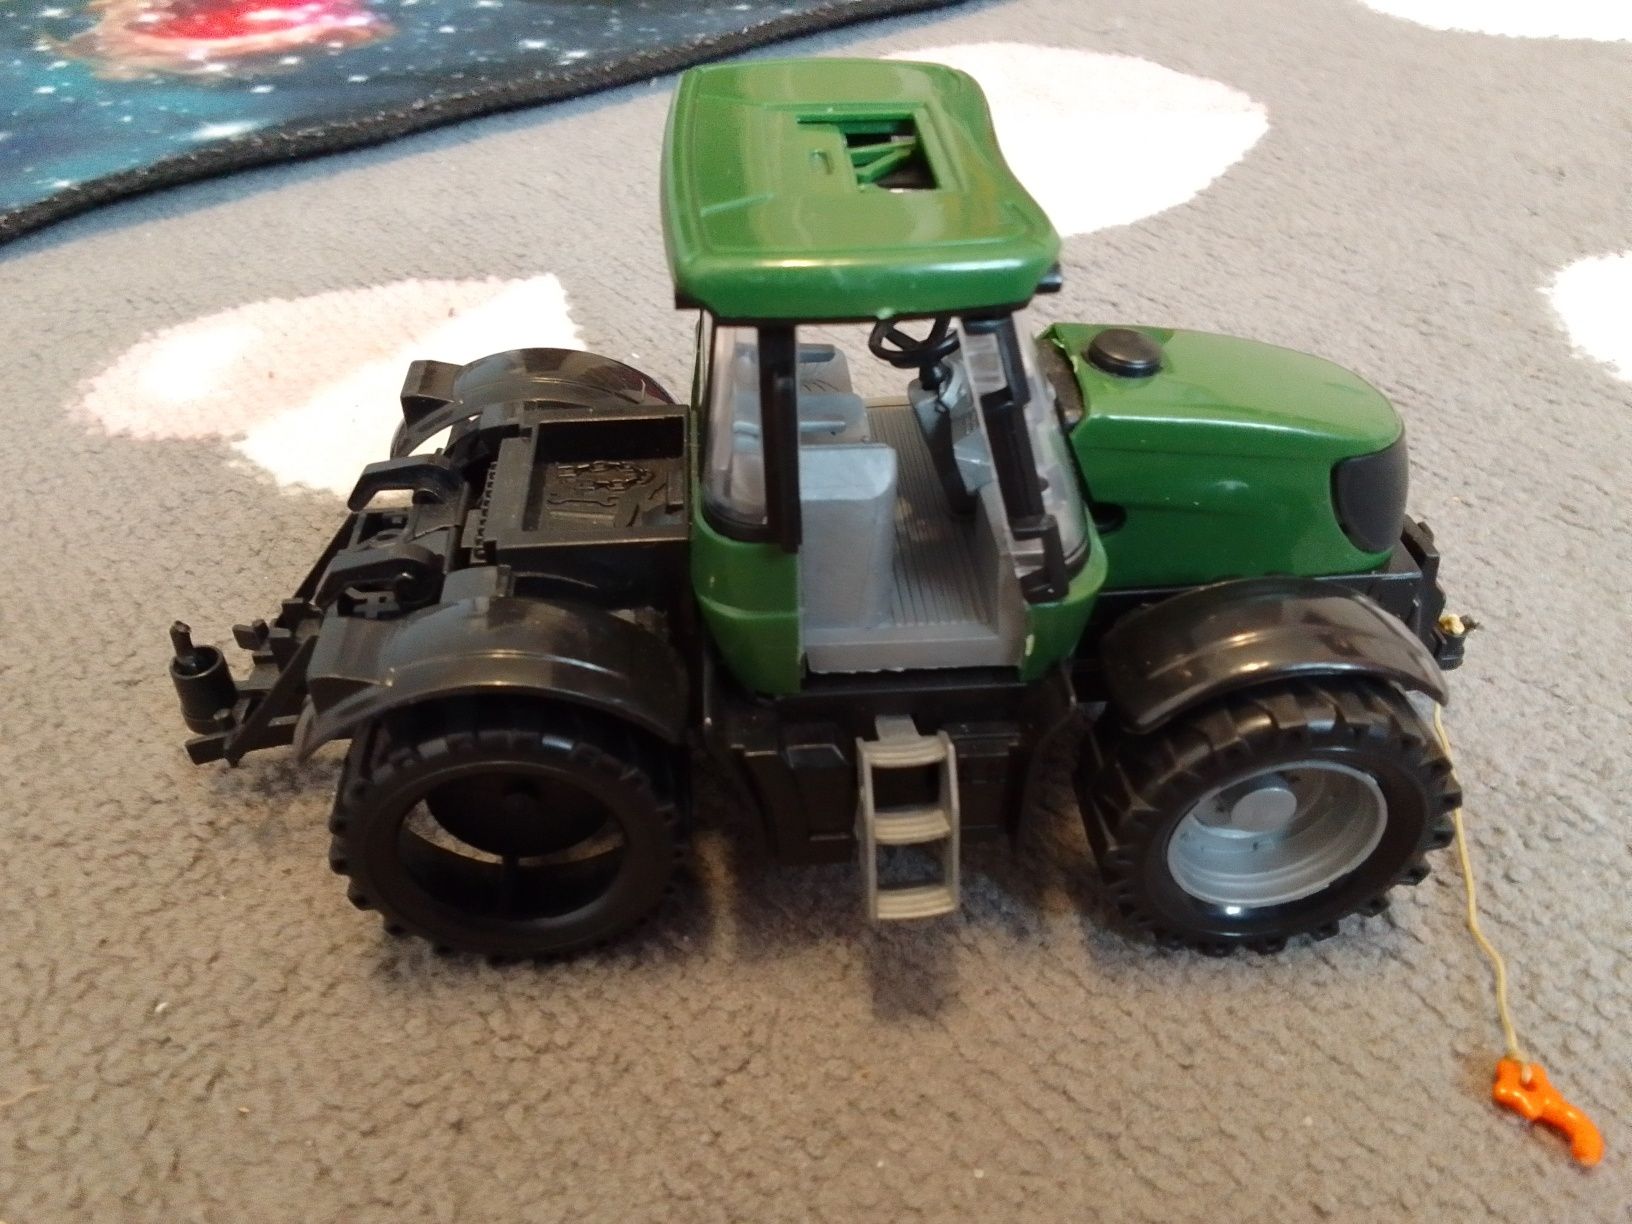 Traktorek traktor zabawka dla chłopca